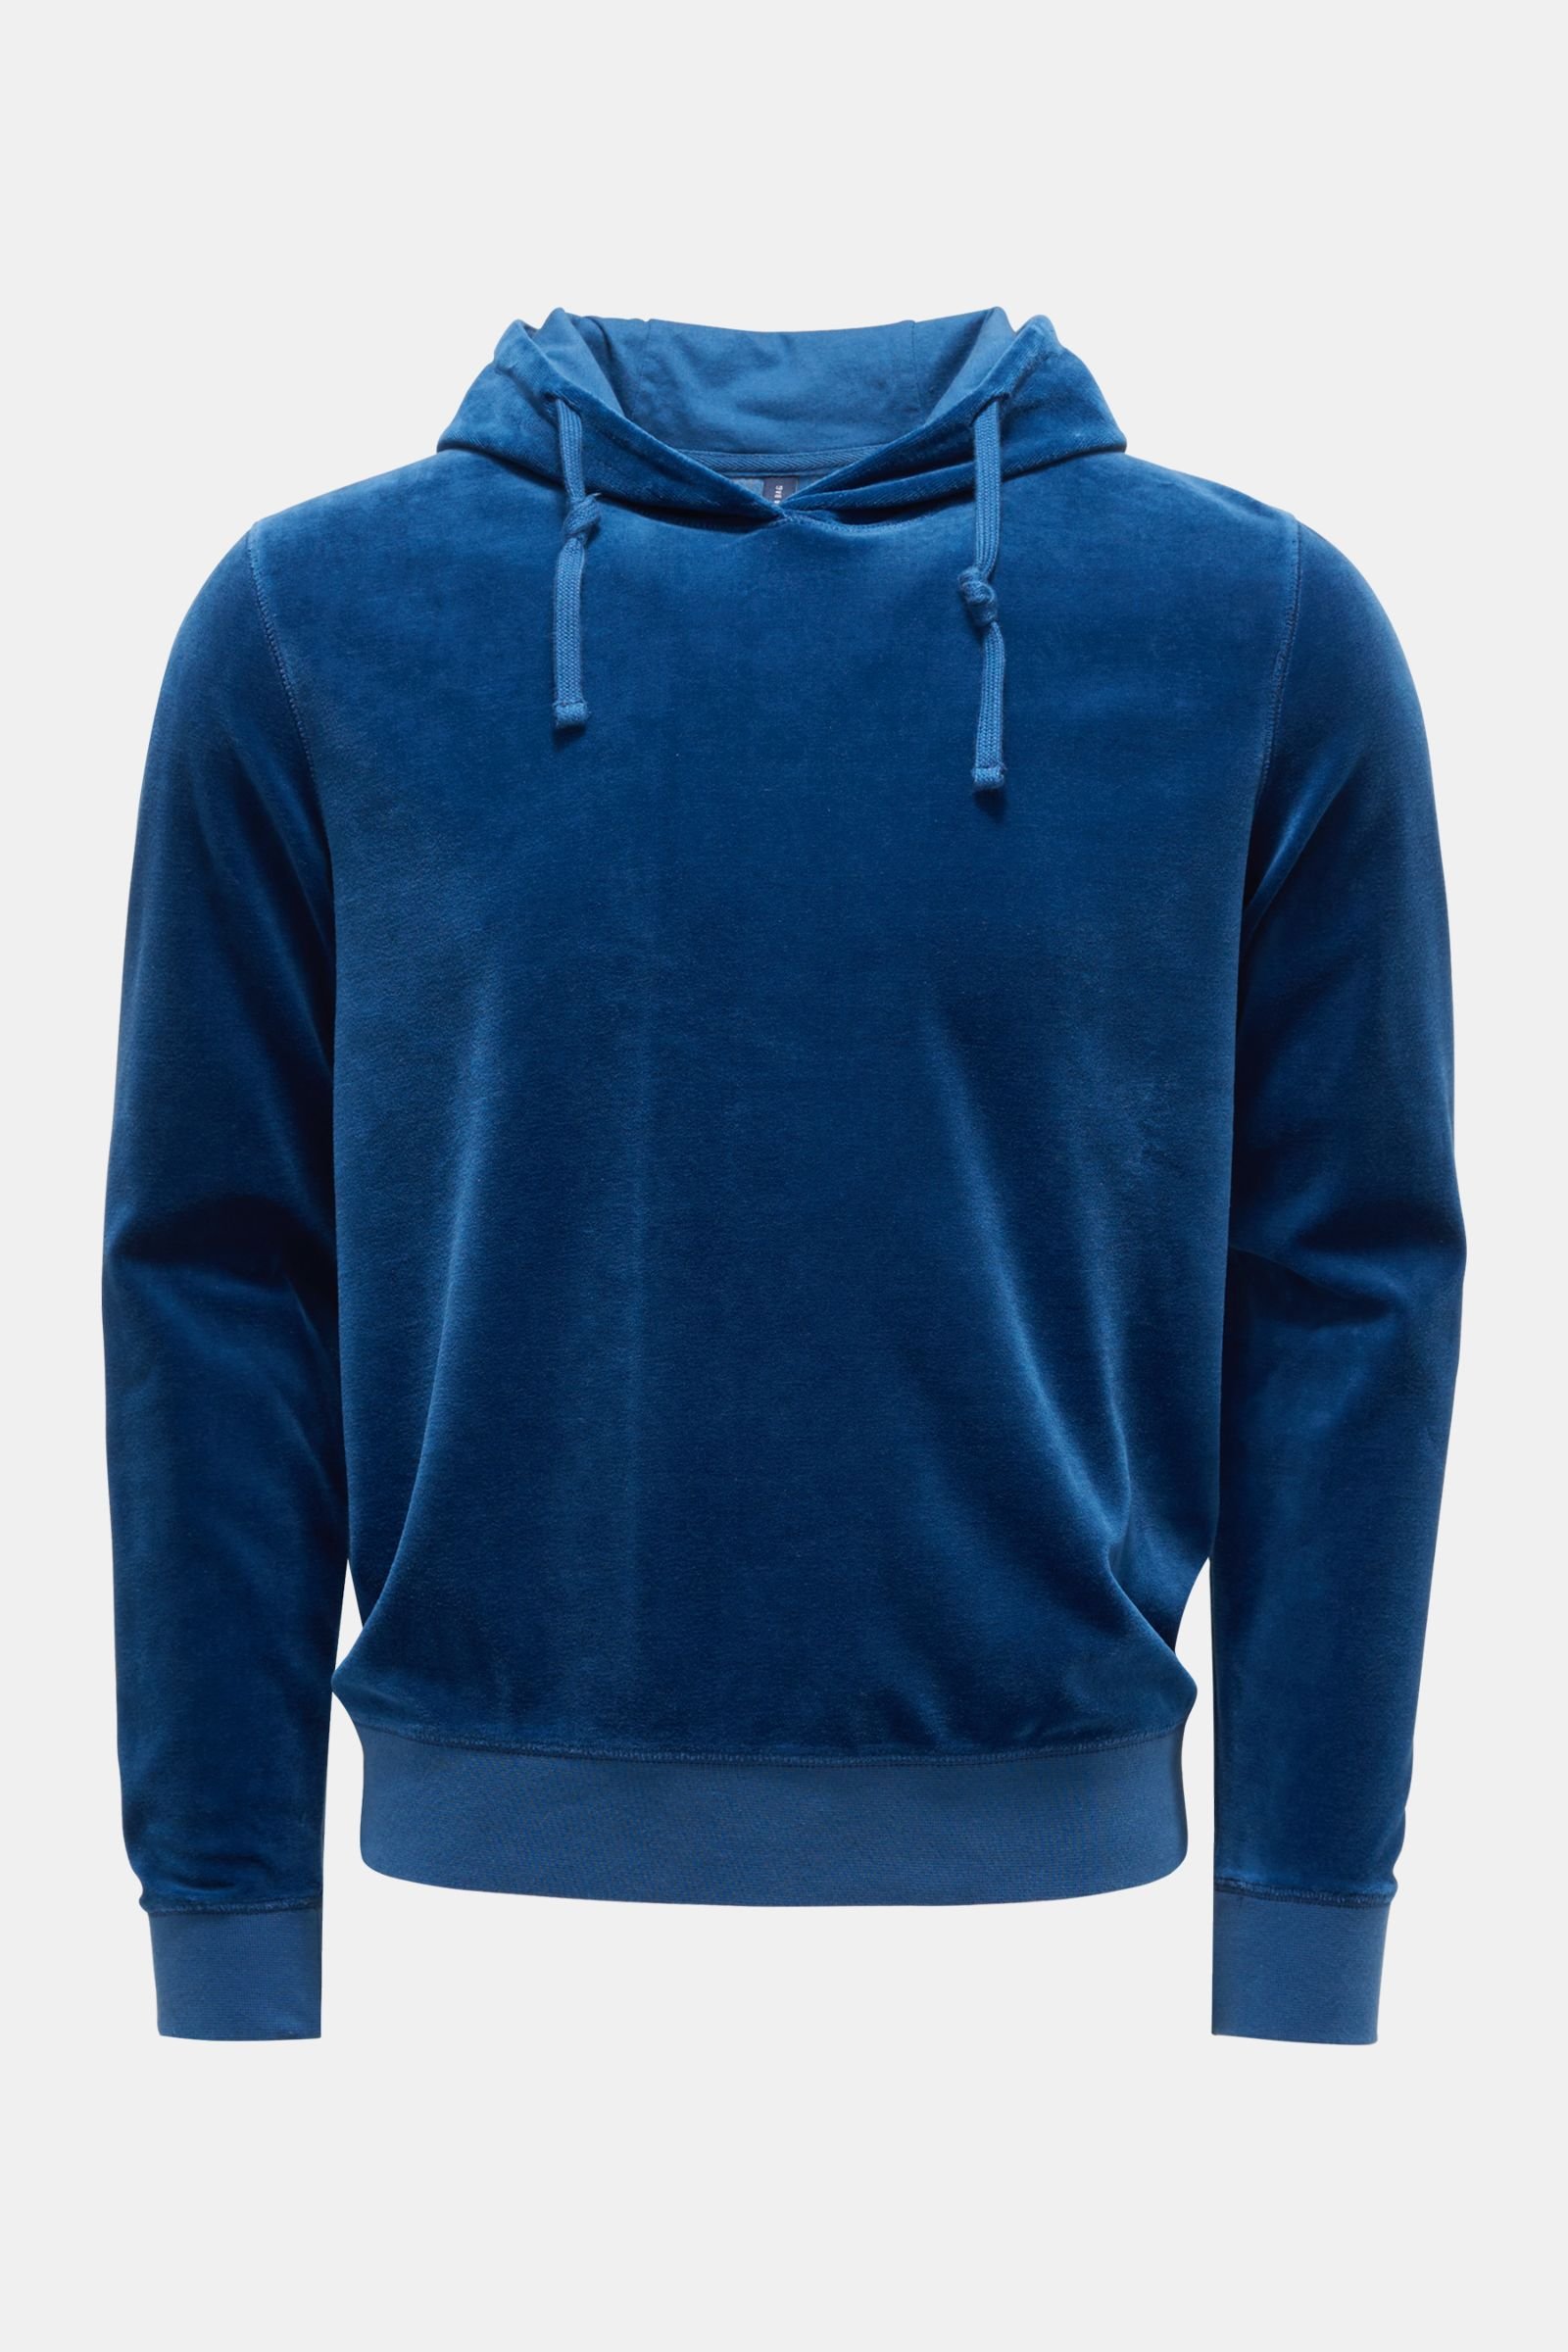 Velvet hooded jumper 'Velvet Hoodie' dark blue